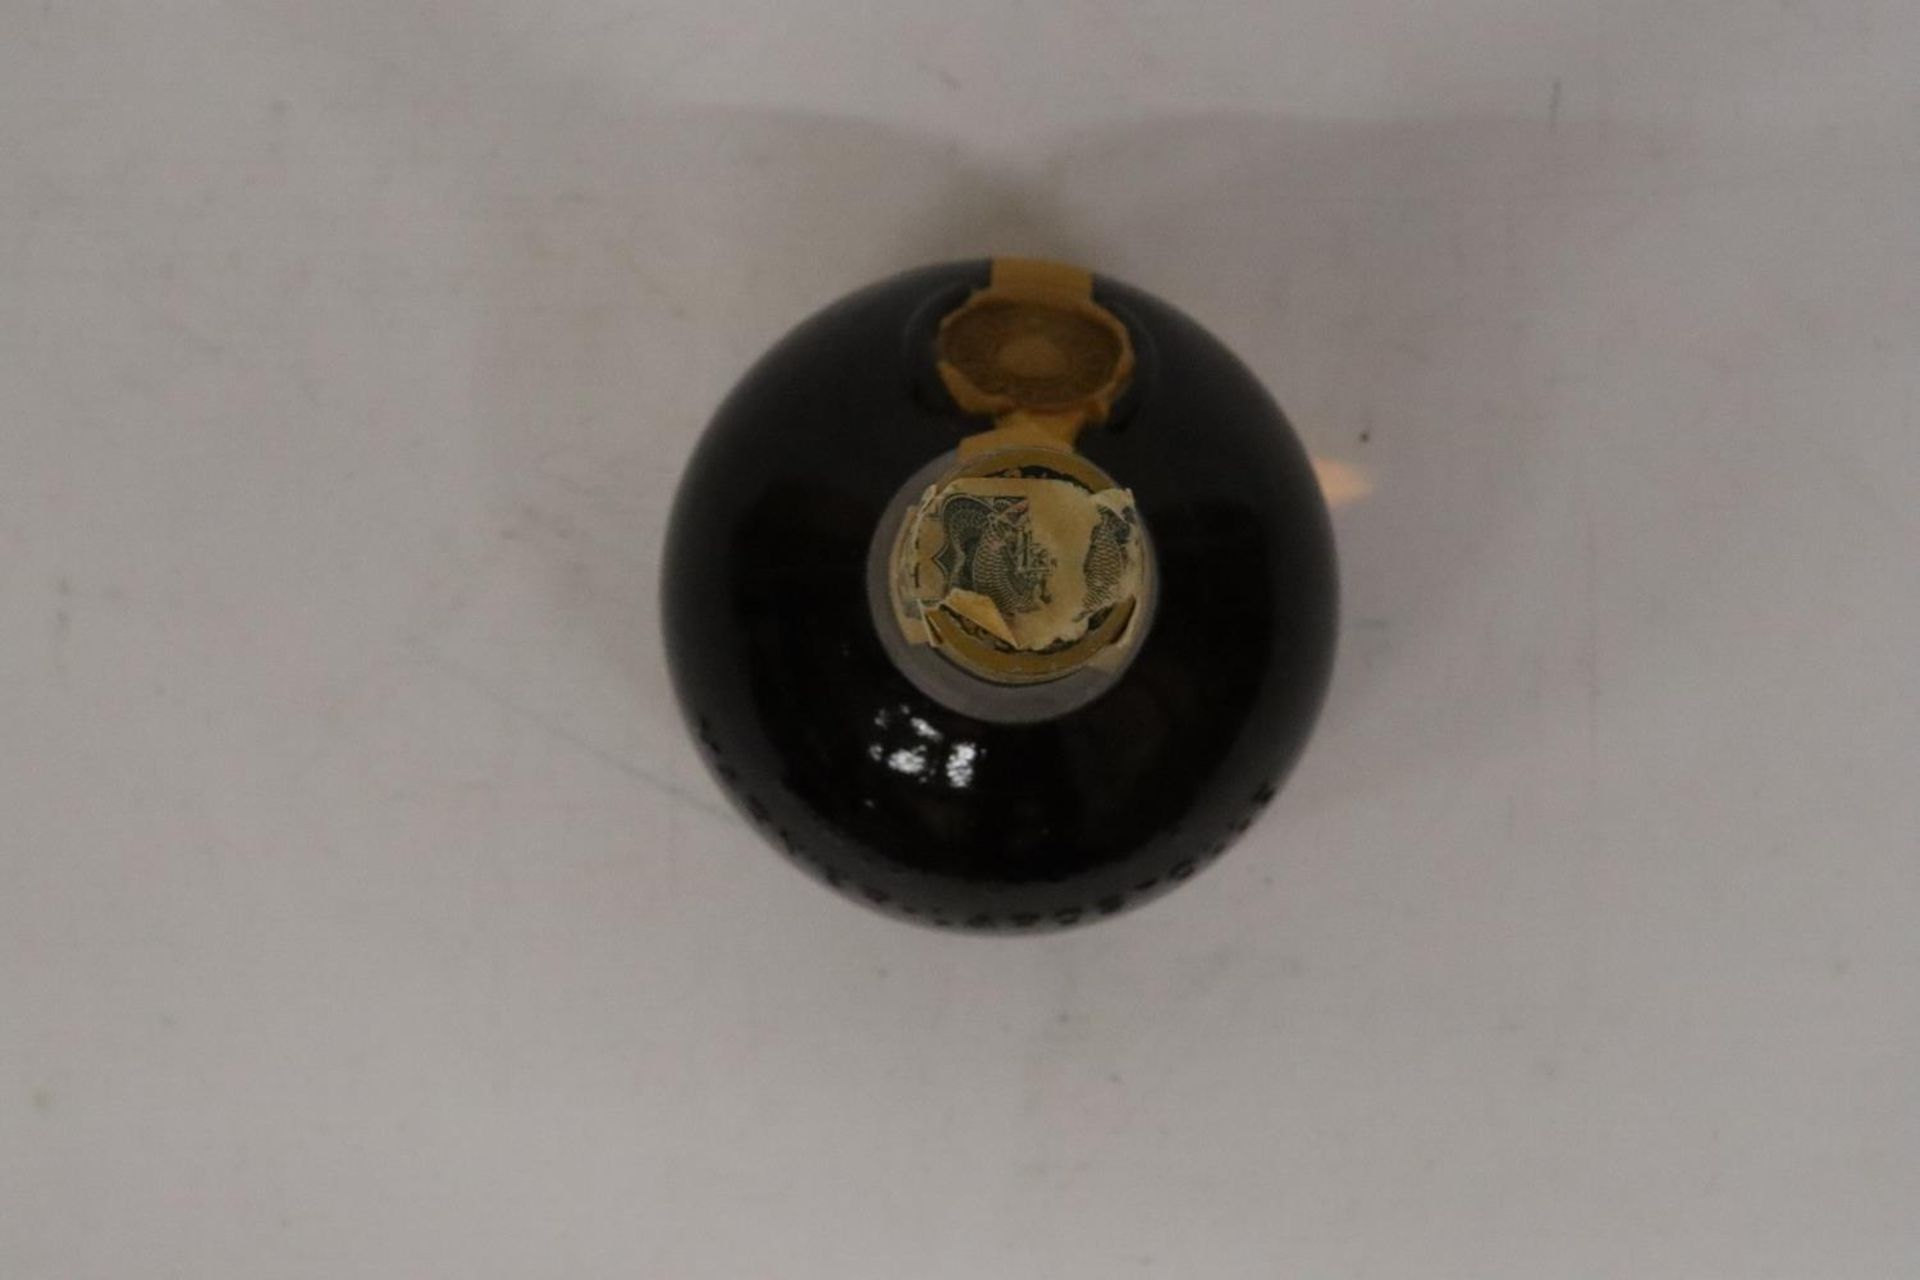 A 75CL BOTTLE OF GRAND MARNIER LIQUOR - Bild 3 aus 3